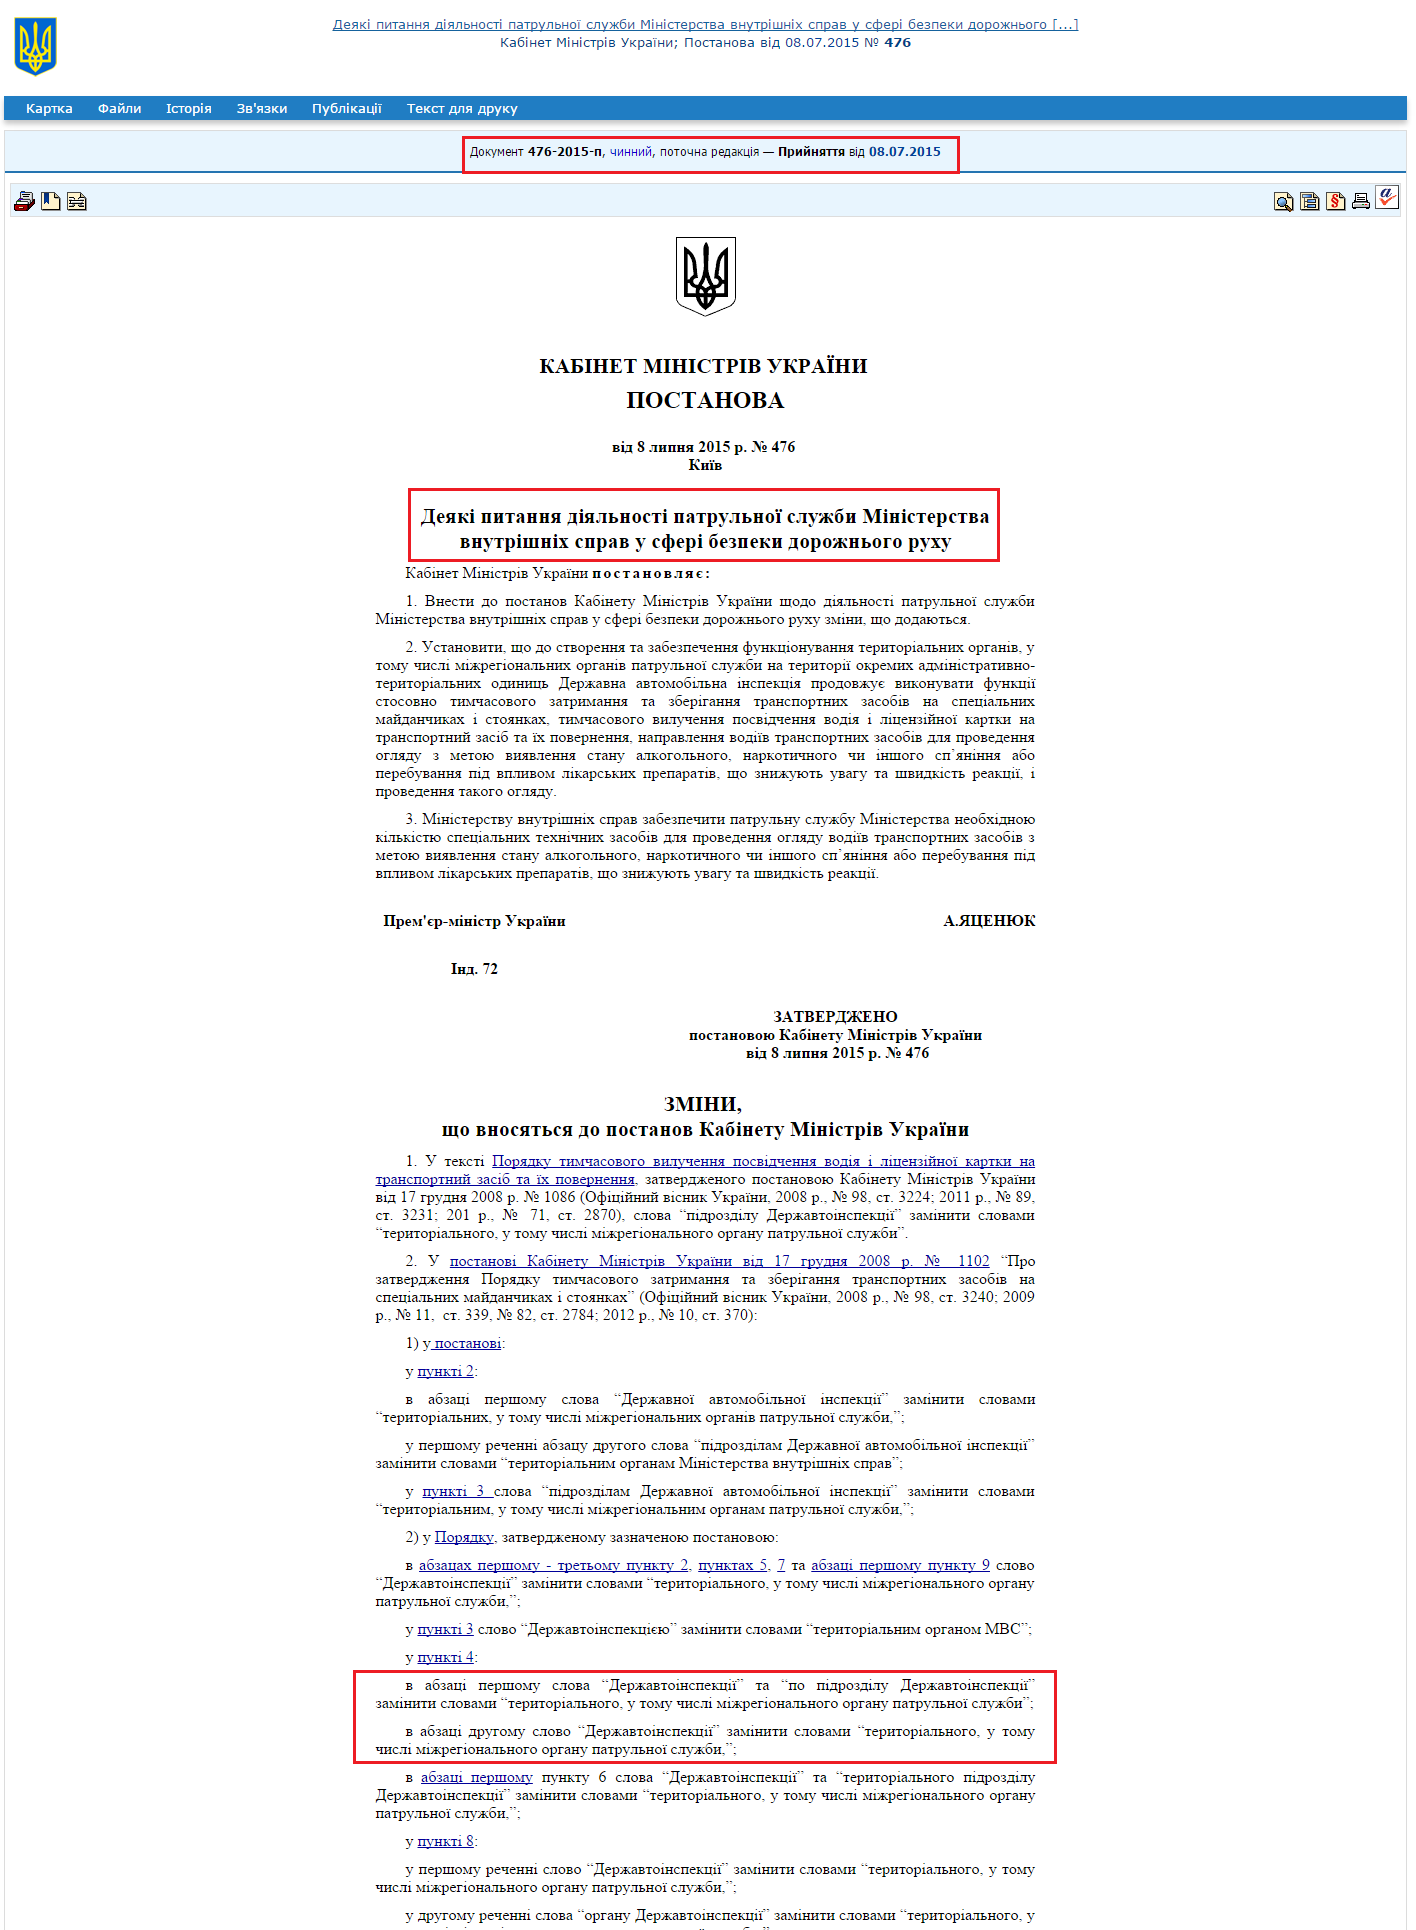 http://zakon2.rada.gov.ua/laws/show/476-2015-%D0%BF